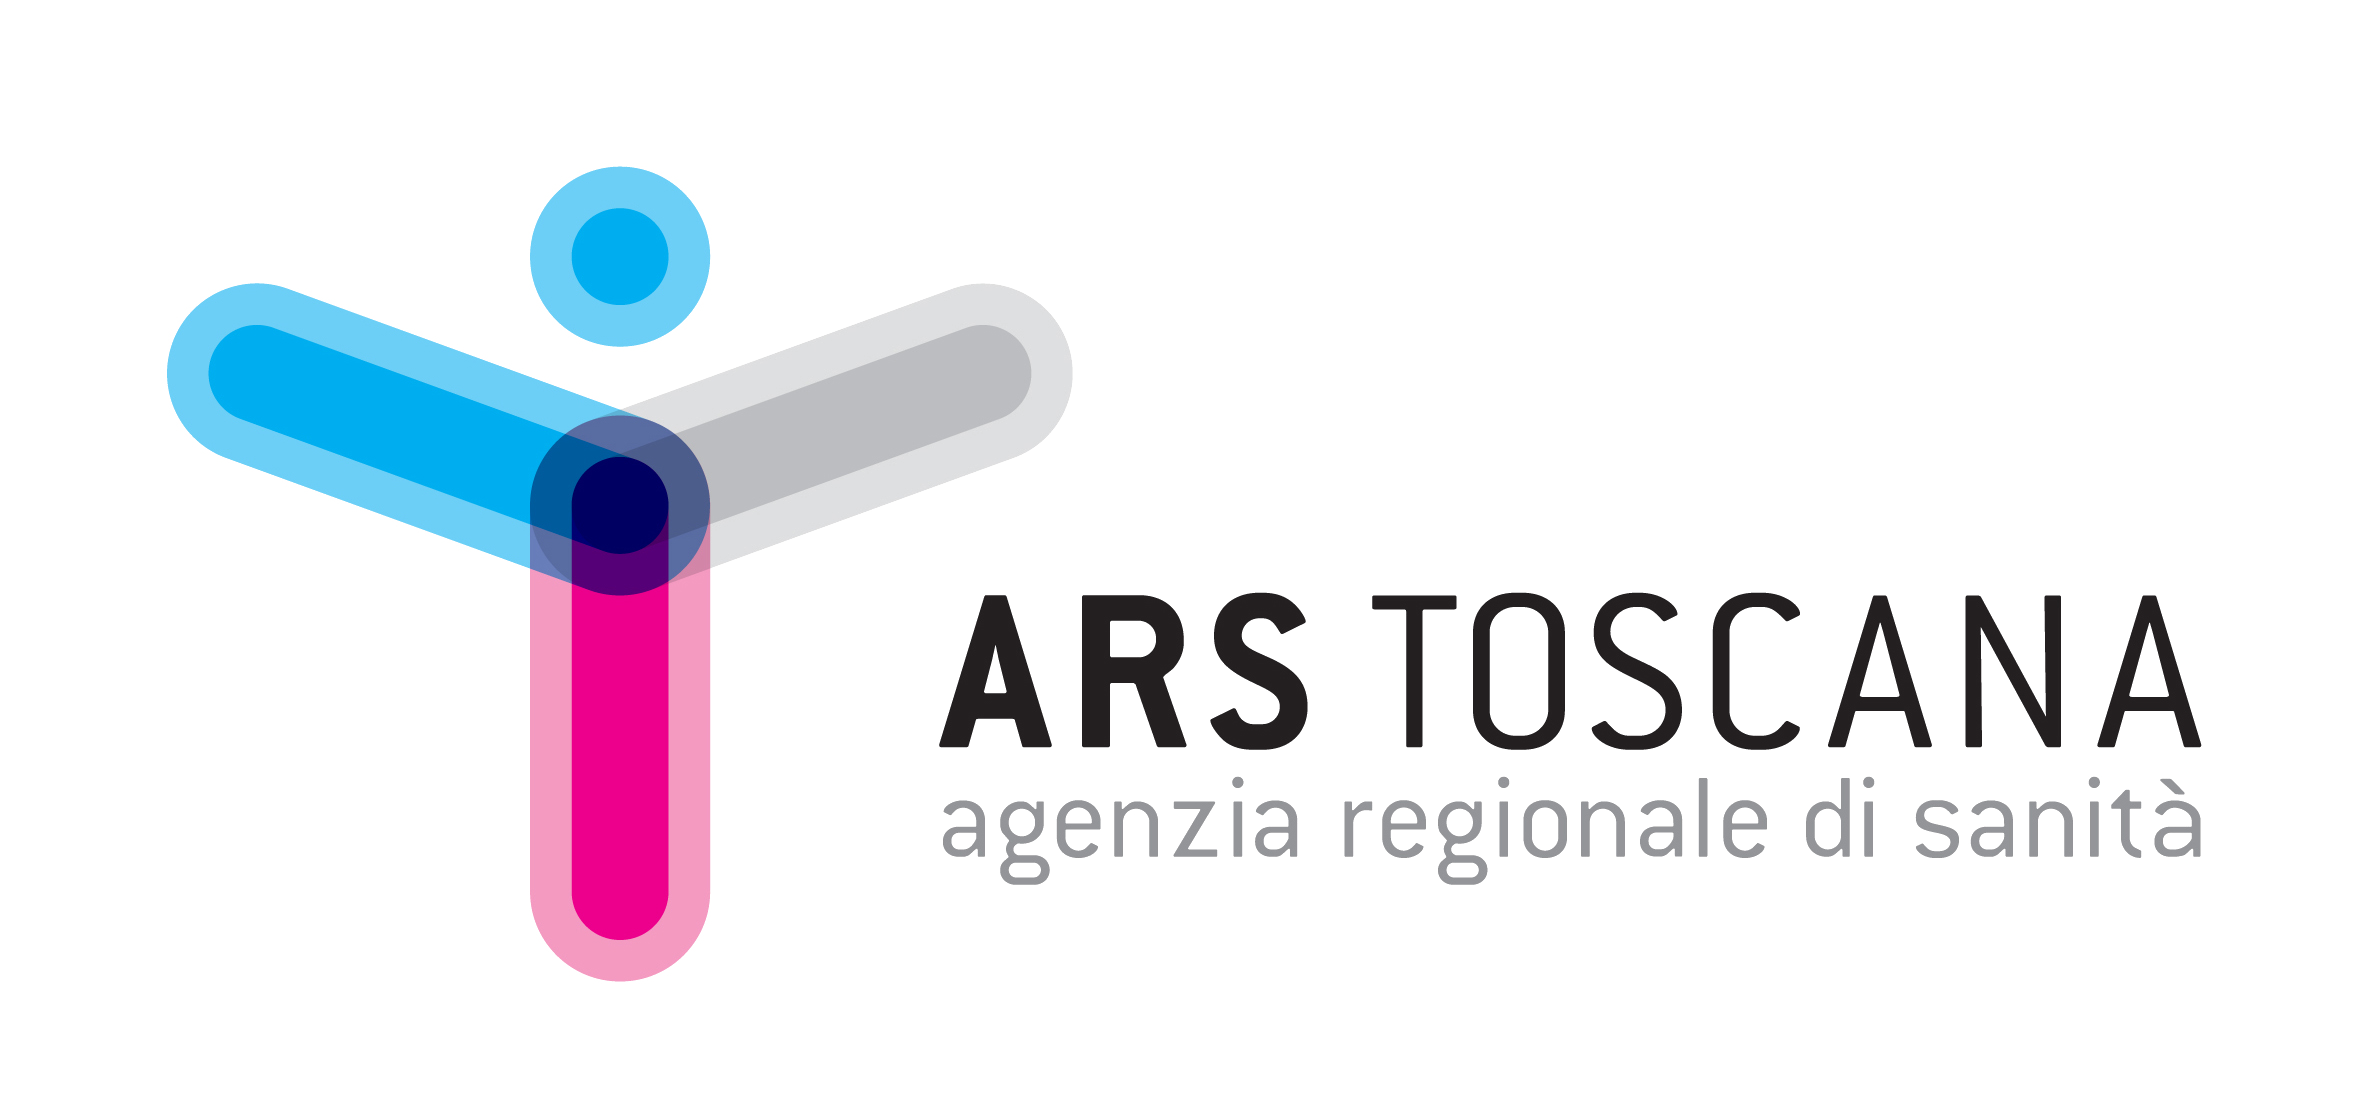 Agendia regionale di sanità della Toscana